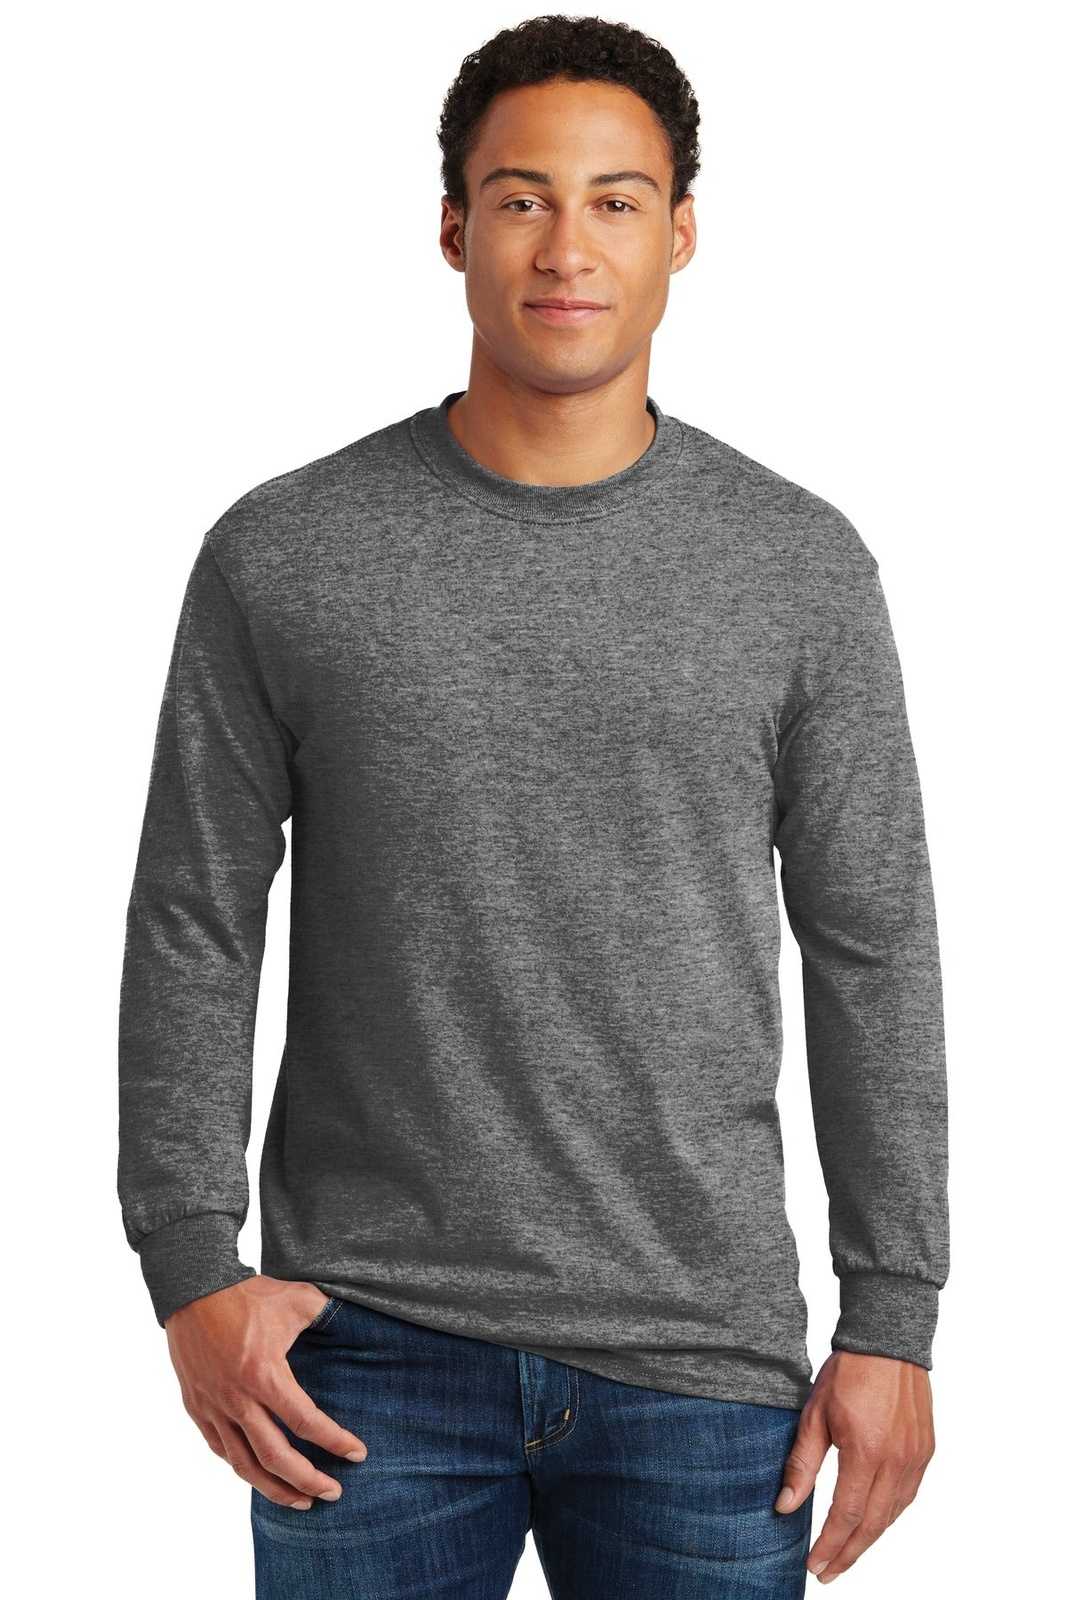 Gildan 5400 Heavy Cotton 100% Cotton Long Sleeve T-Shirt - Graphite Heather - HIT a Double